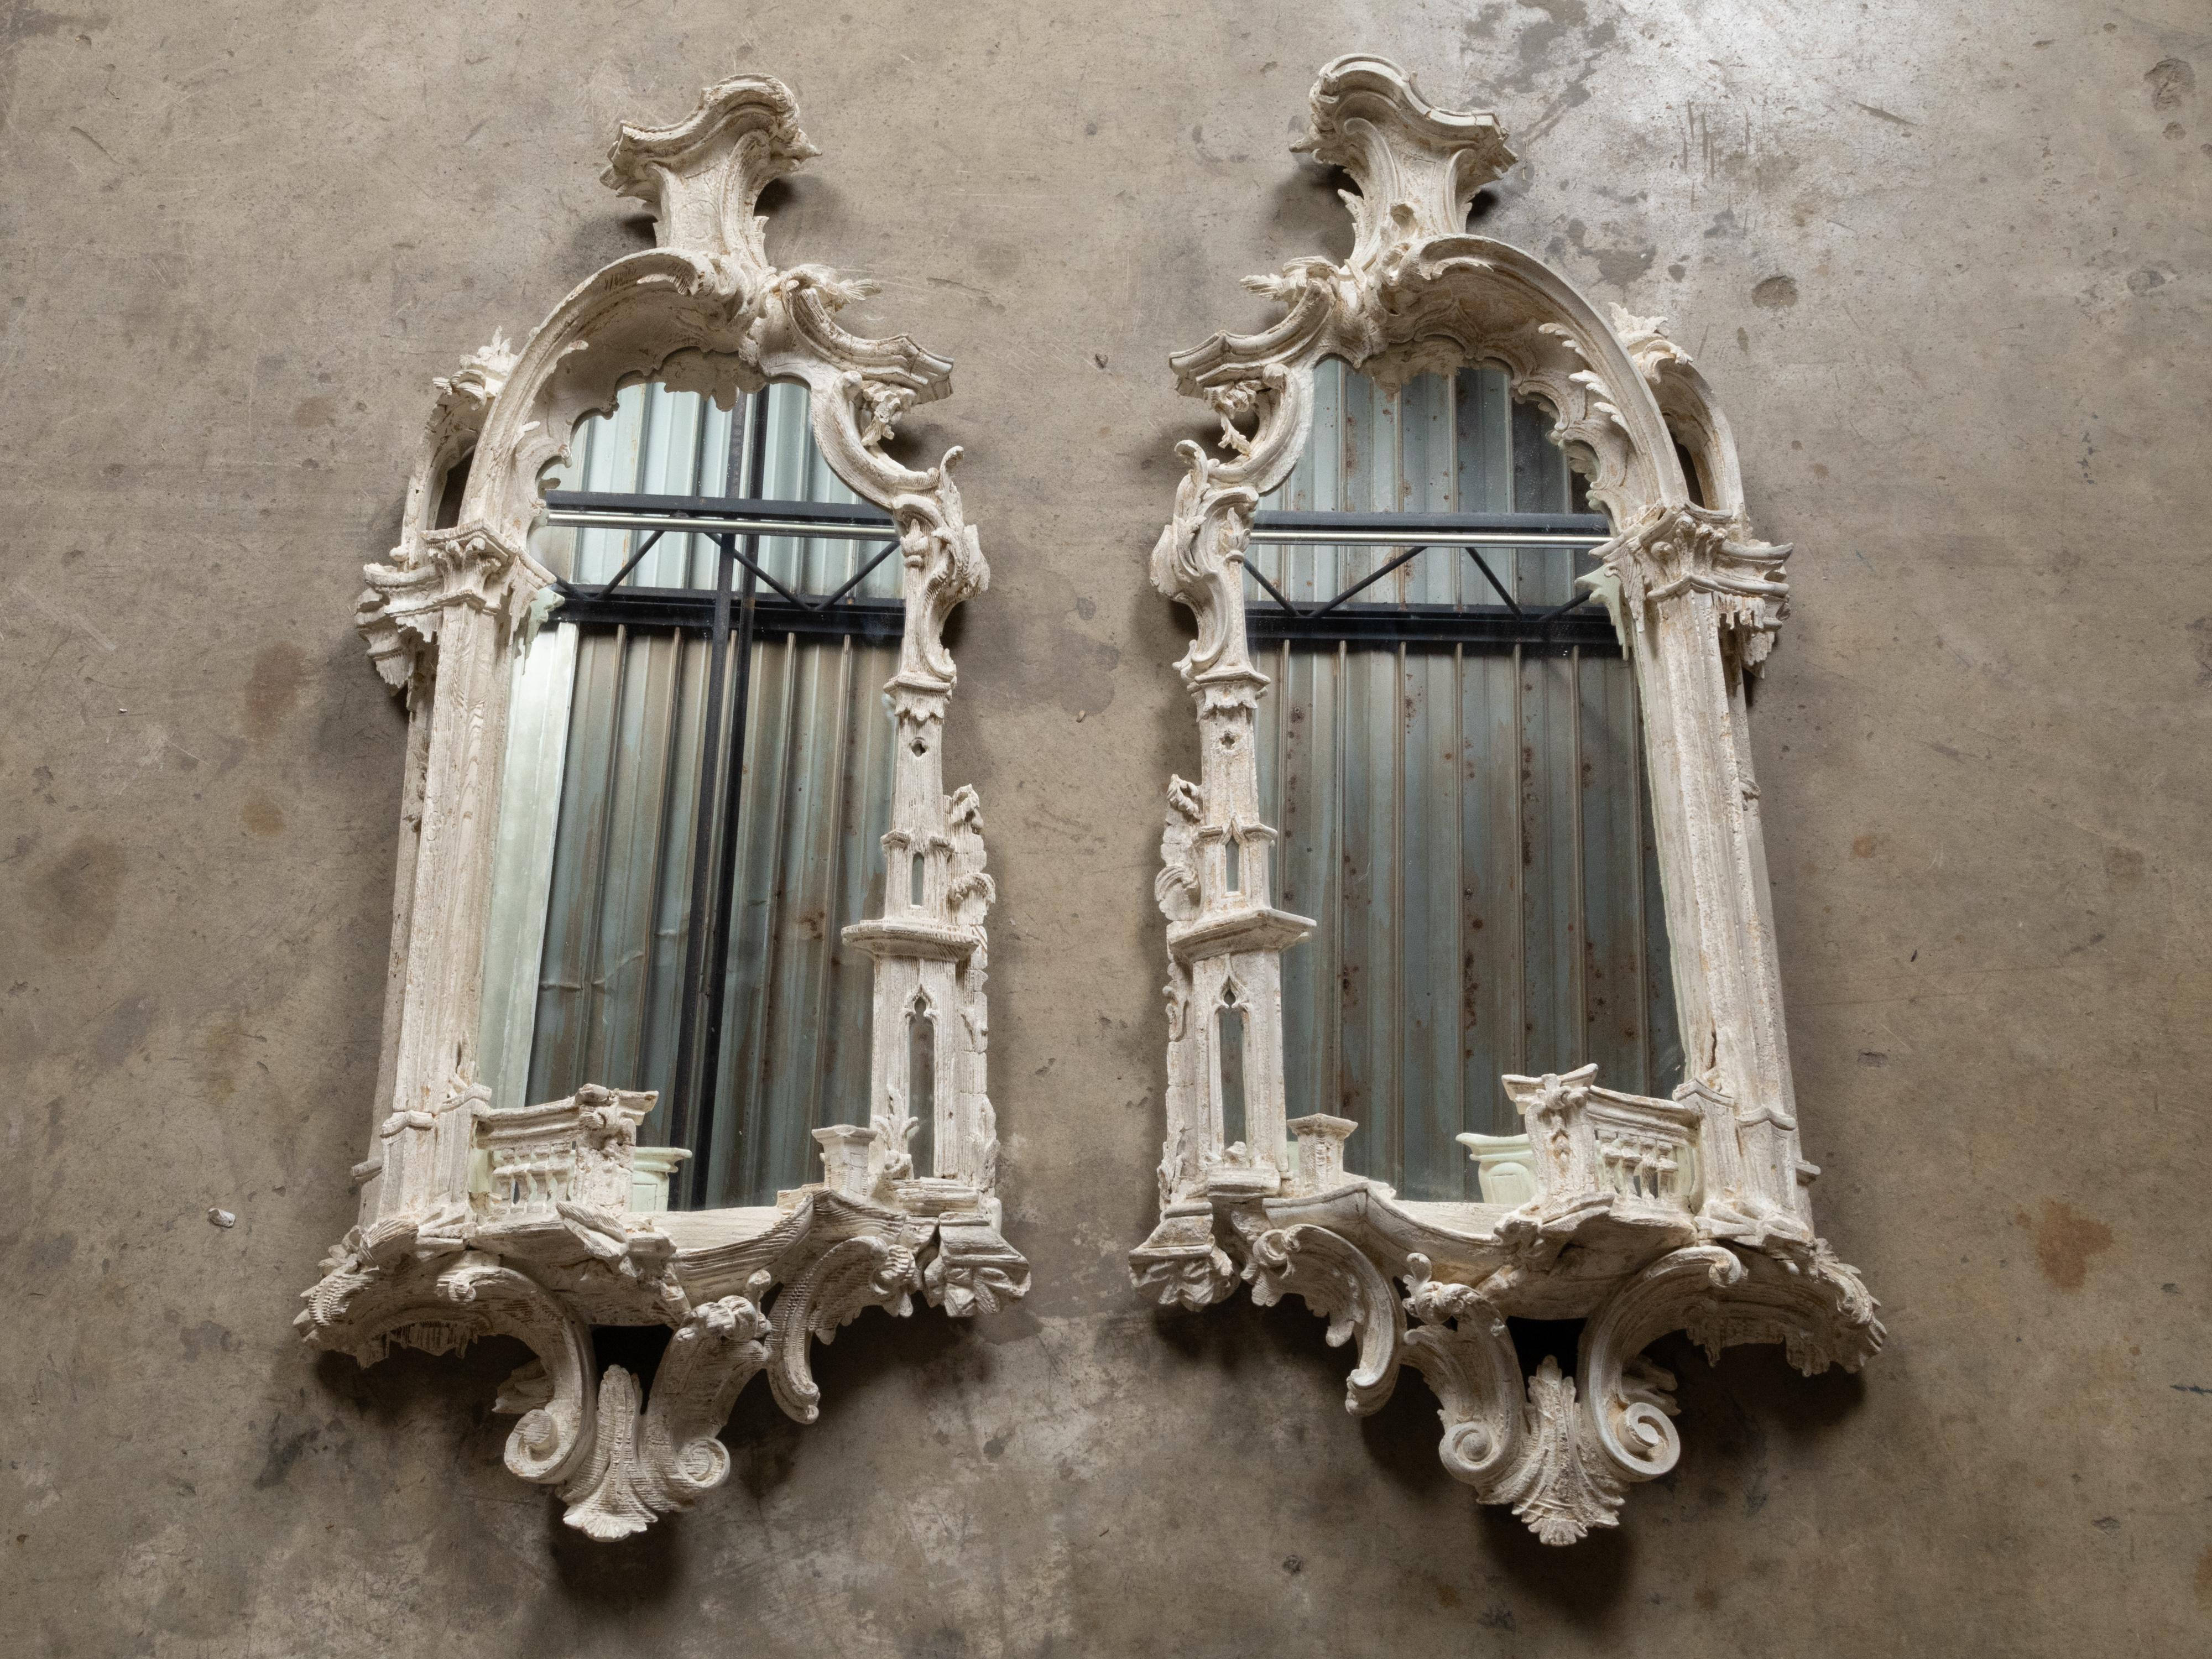 Paire de miroirs peints et sculptés de style Chippendale du 19ème siècle, avec des cadres richement sculptés. Cette exquise paire de miroirs rococo anglais de style Chippendale, datant du XIXe siècle, présente des cadres richement sculptés qui